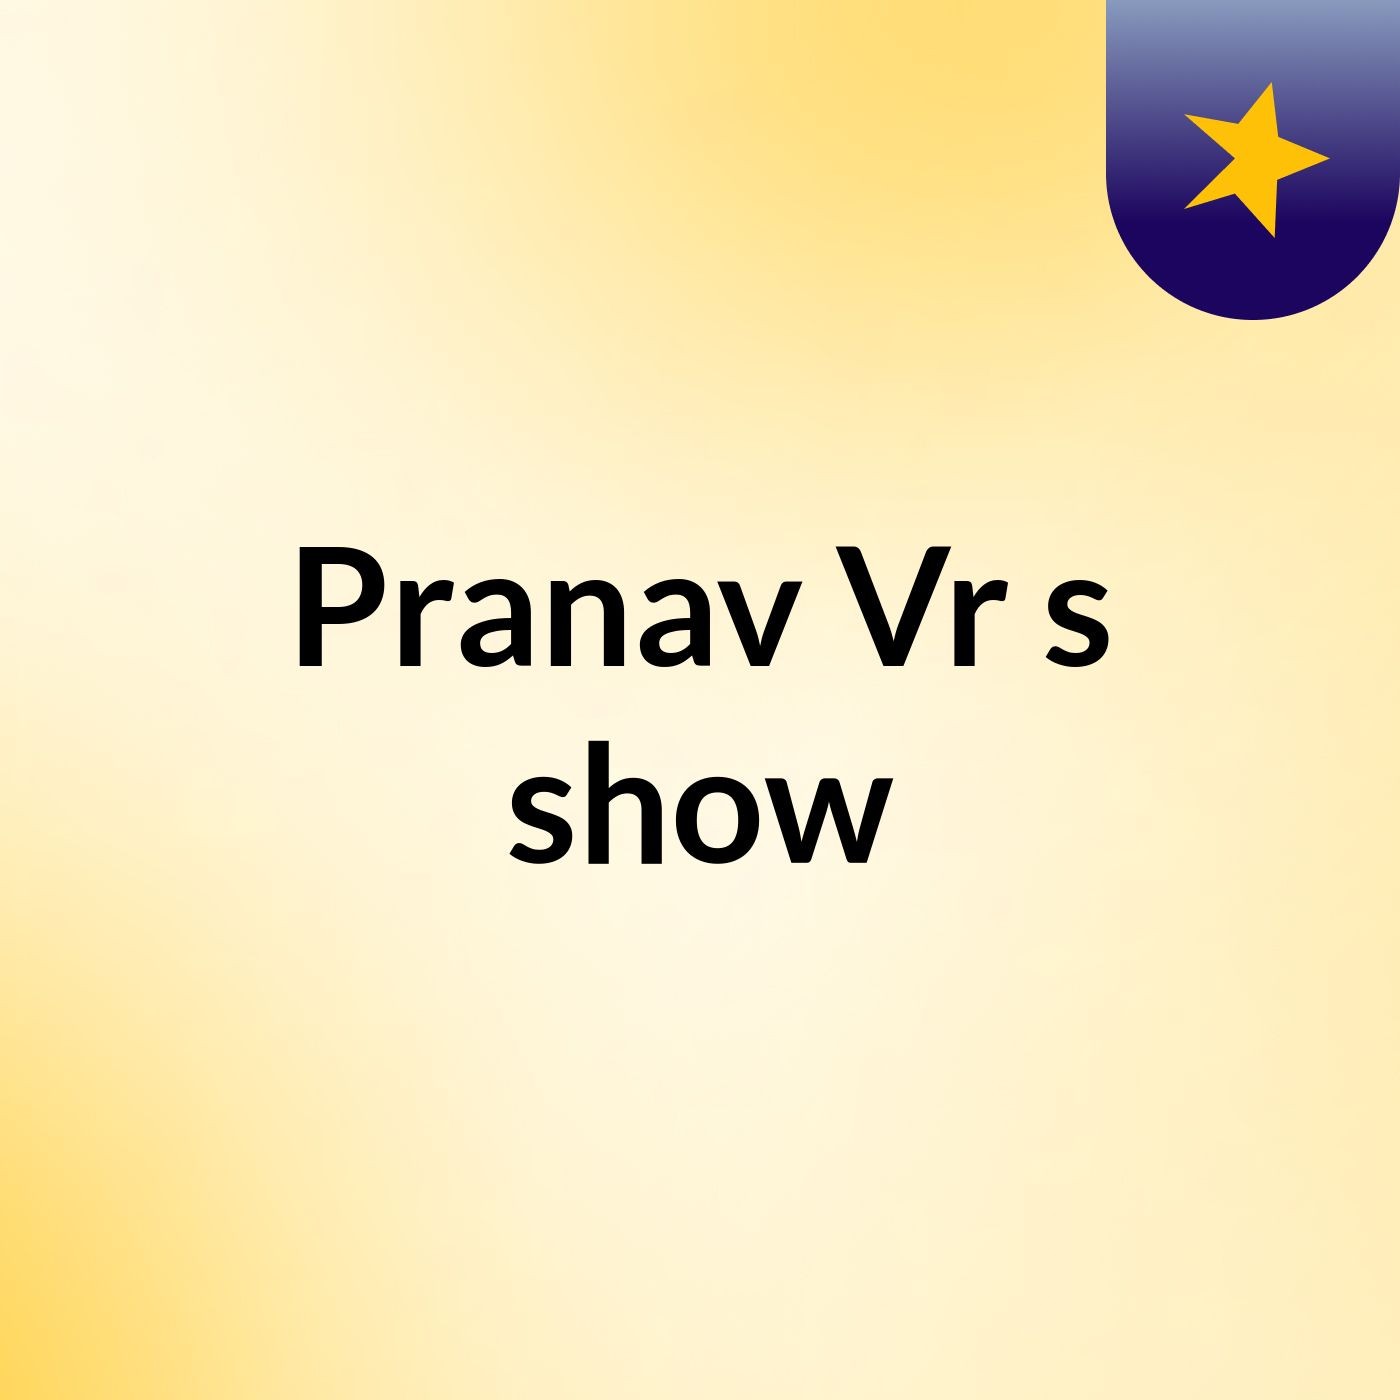 Pranav Vr's show